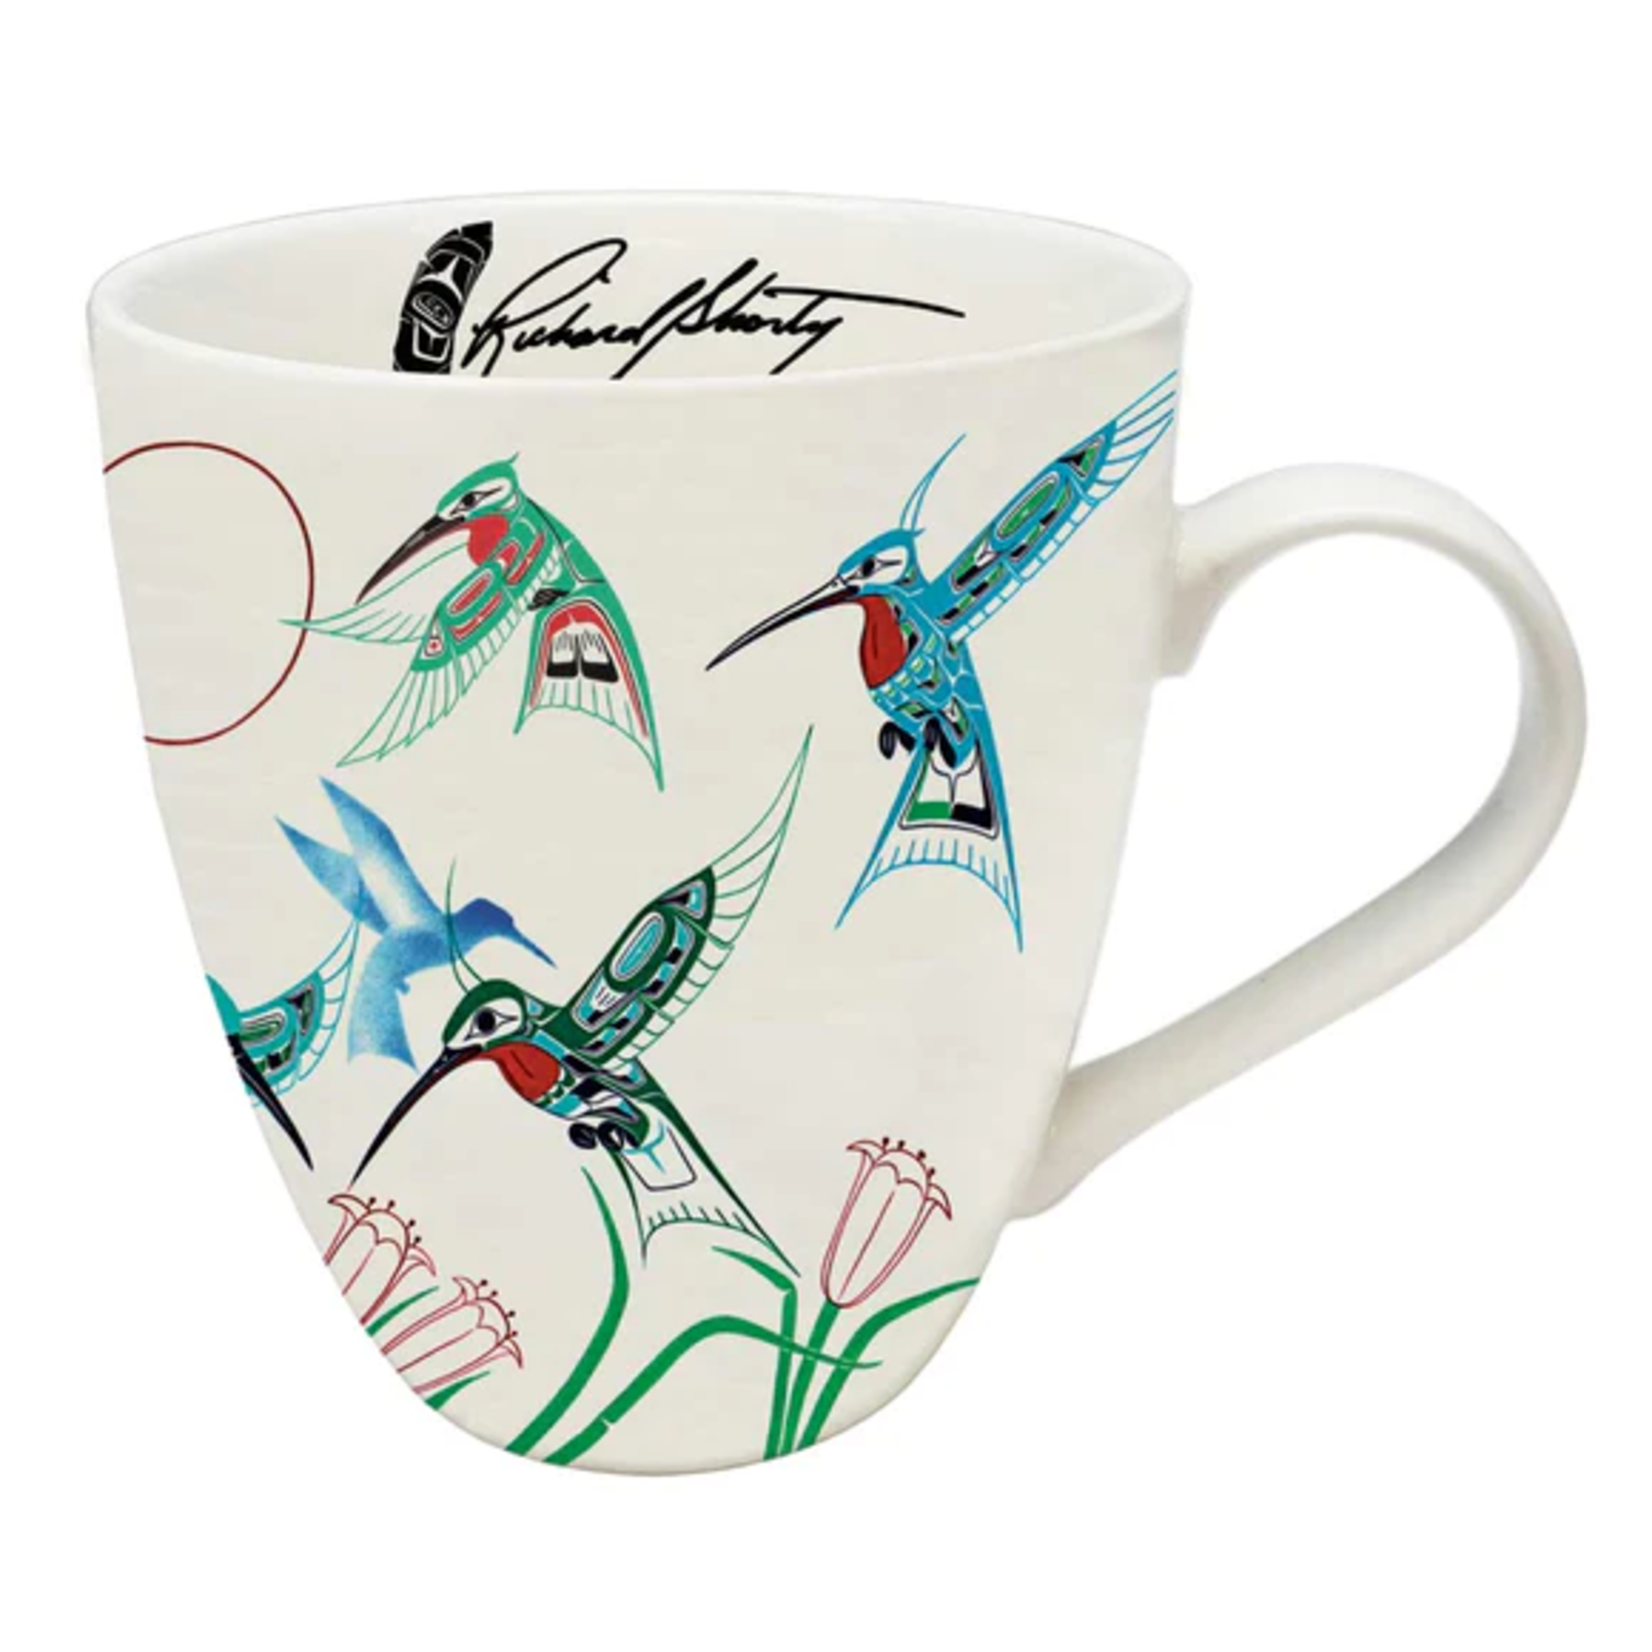 Richard Shorty Richard Shorty "Migration" Porcelain Mug